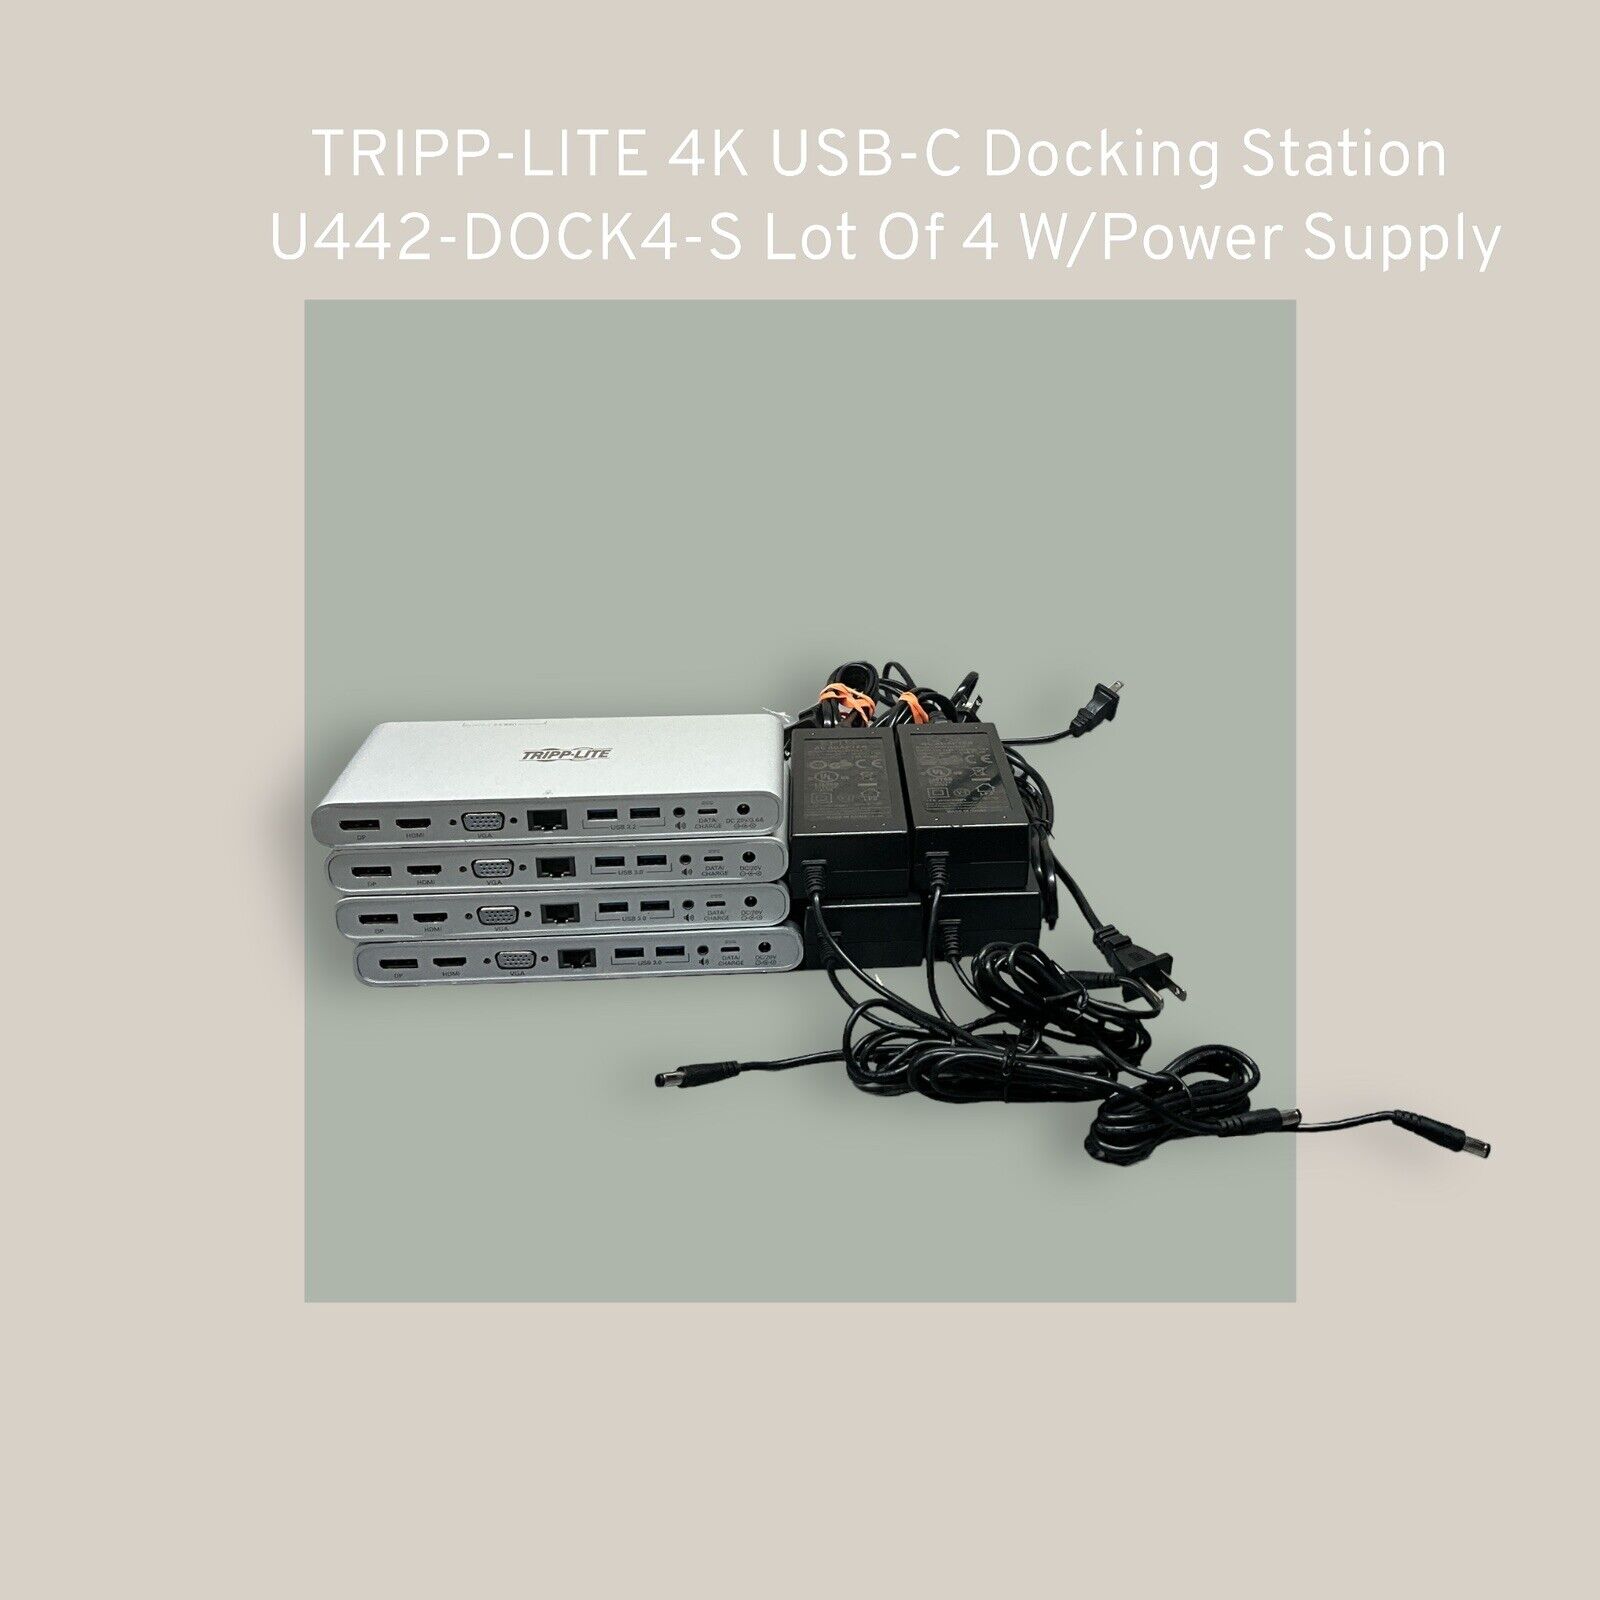 TRIPP-LITE 4K USB-C Docking Station U442-DOCK4-S Lot Of 4 W/Power Supply